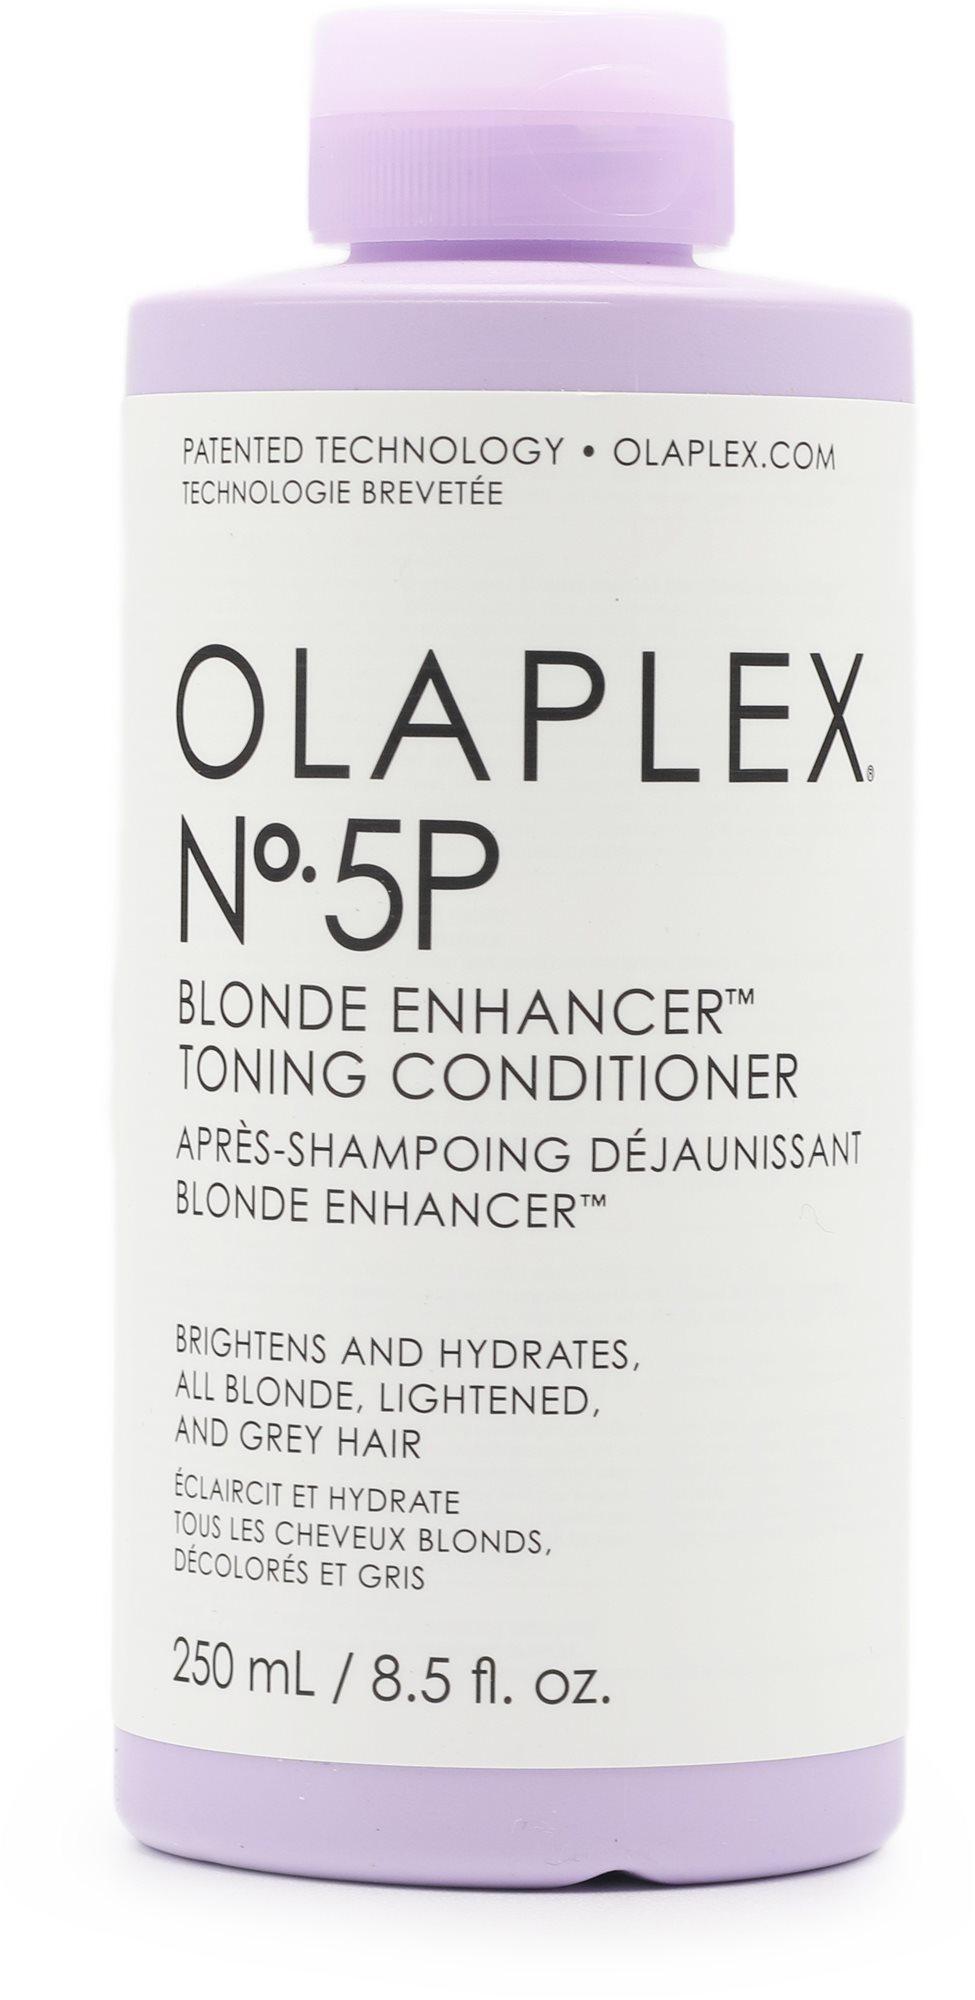 OLAPLEX No. 5P Blonde Enhancer Toning Conditioner 250 ml